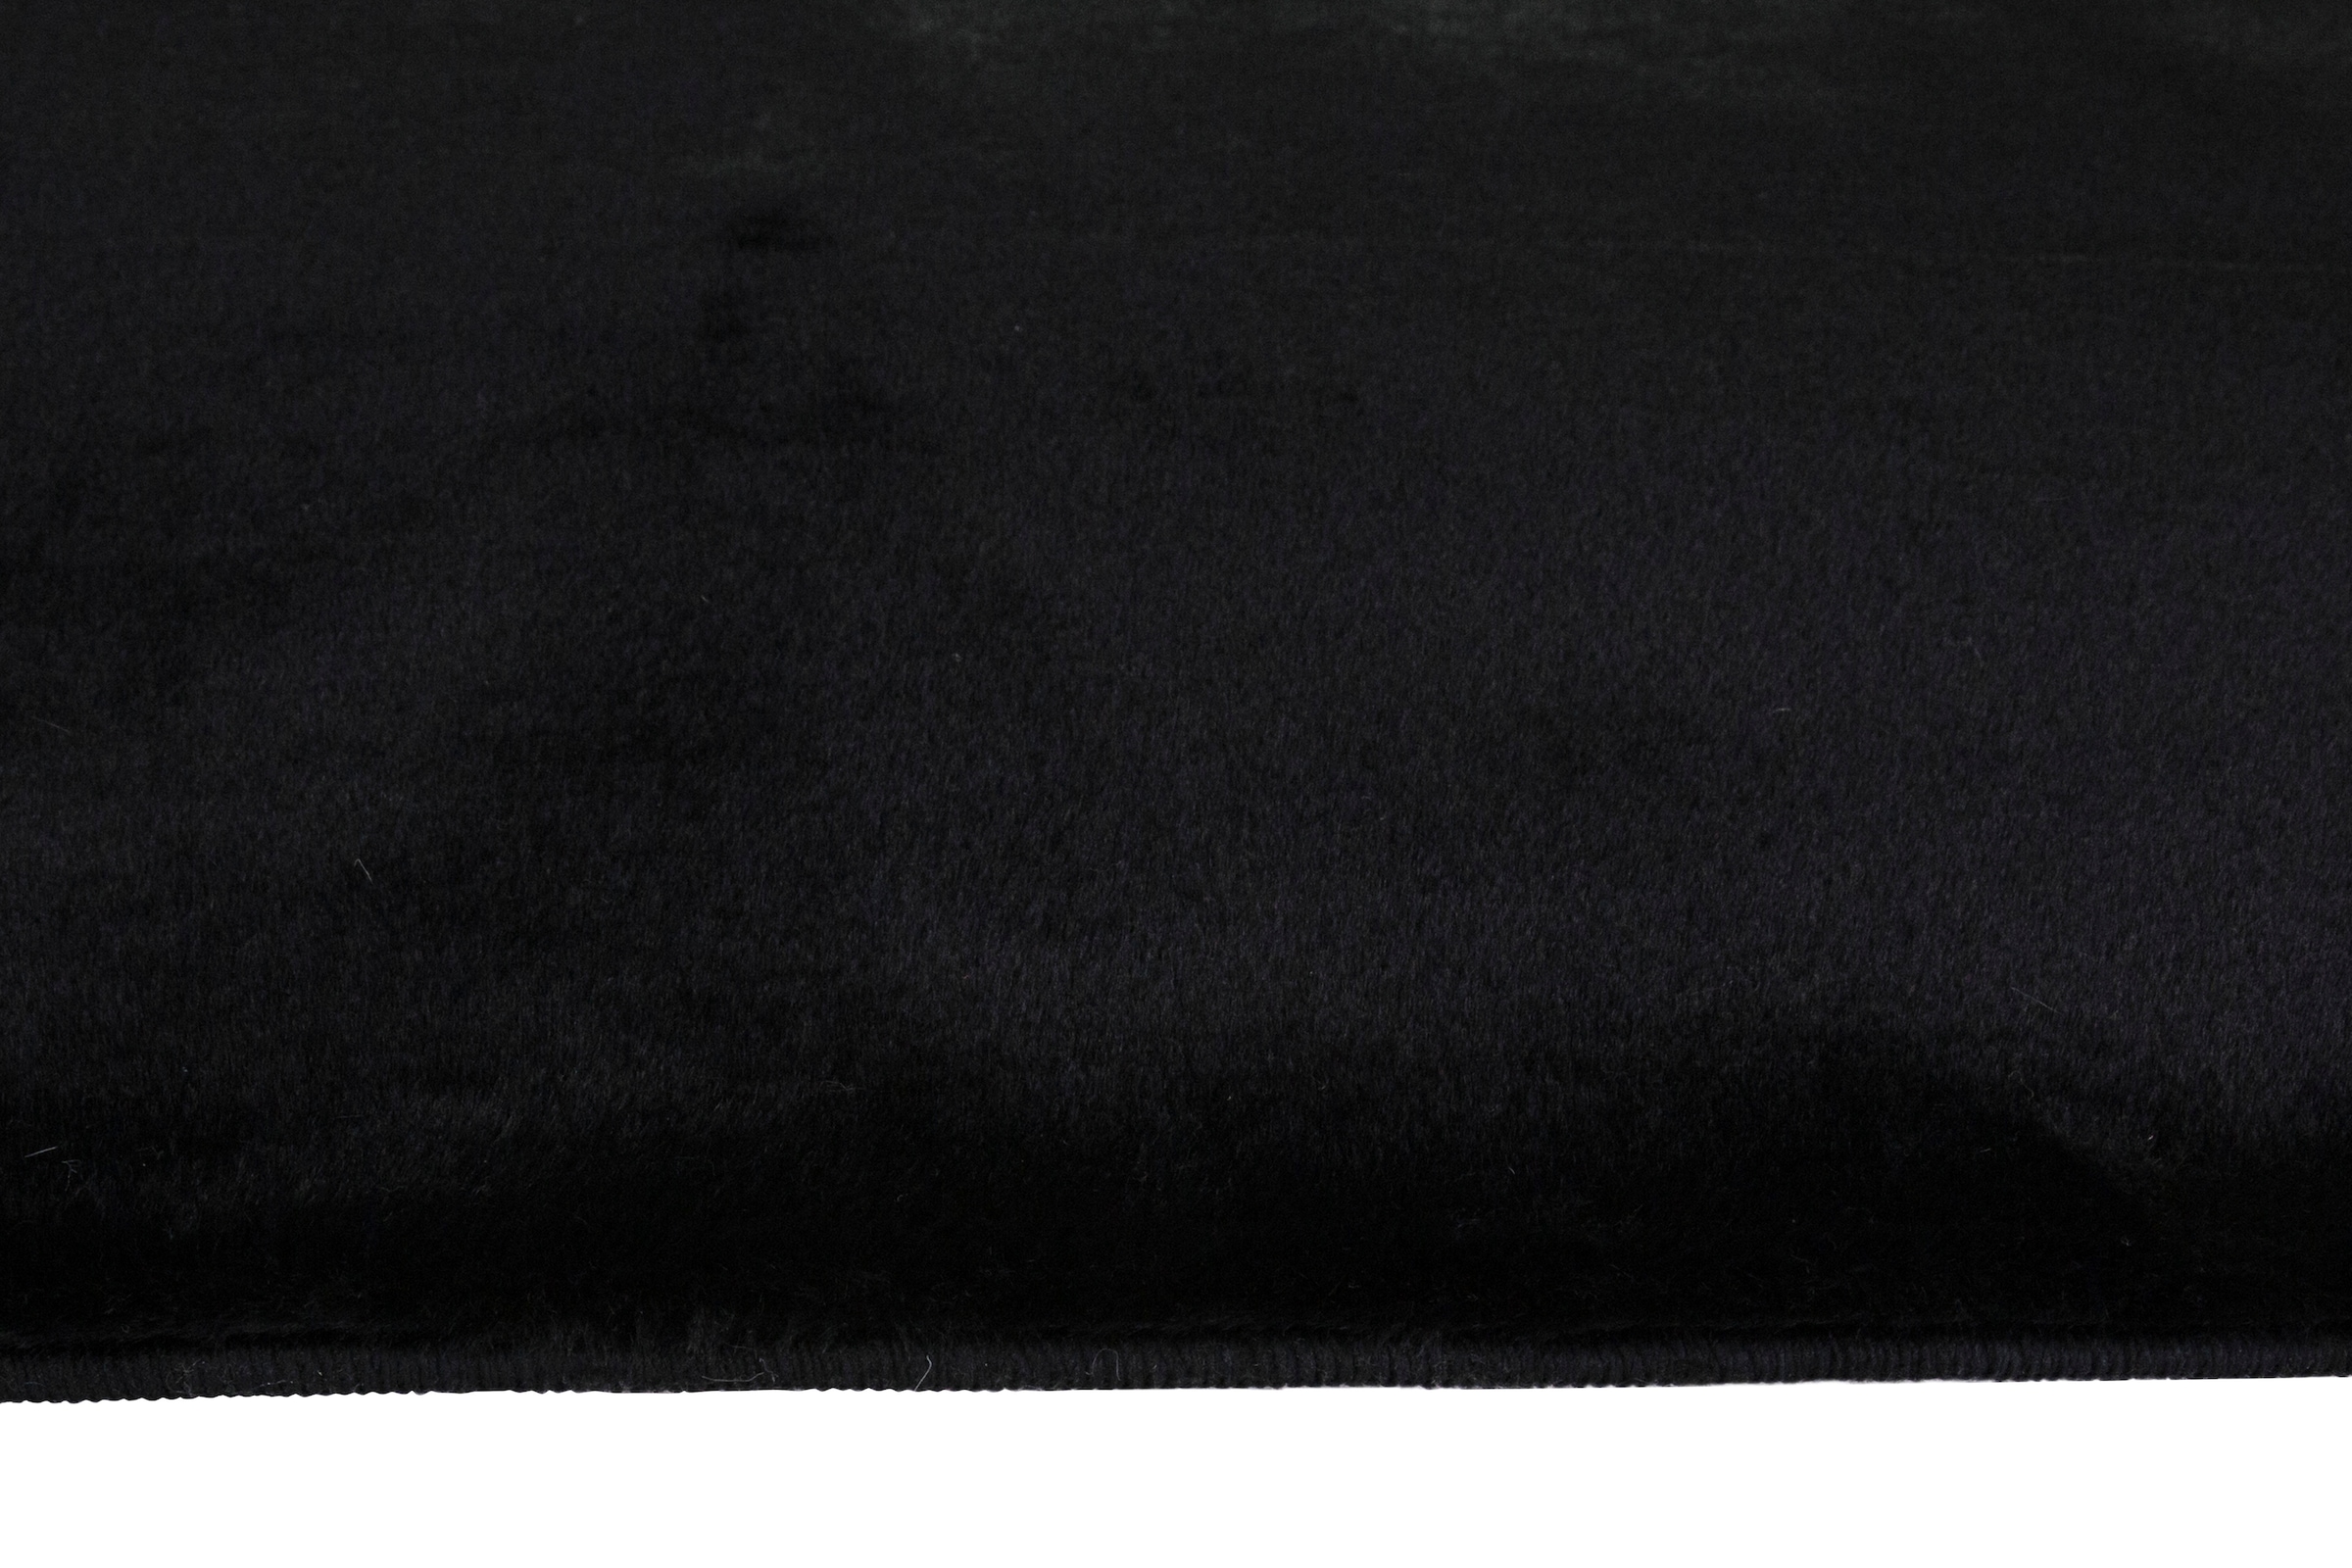 Leonique Fellteppich »Balu«, rechteckig, 20 mm Höhe, Kunstfell in Kaninchenfell Haptik, fußbodenheizungsgeeignet, pflegeleicht, ideale Teppiche für Wohnzimmer, Schlafzimmer, Esszimmer, Arbeitszimmer